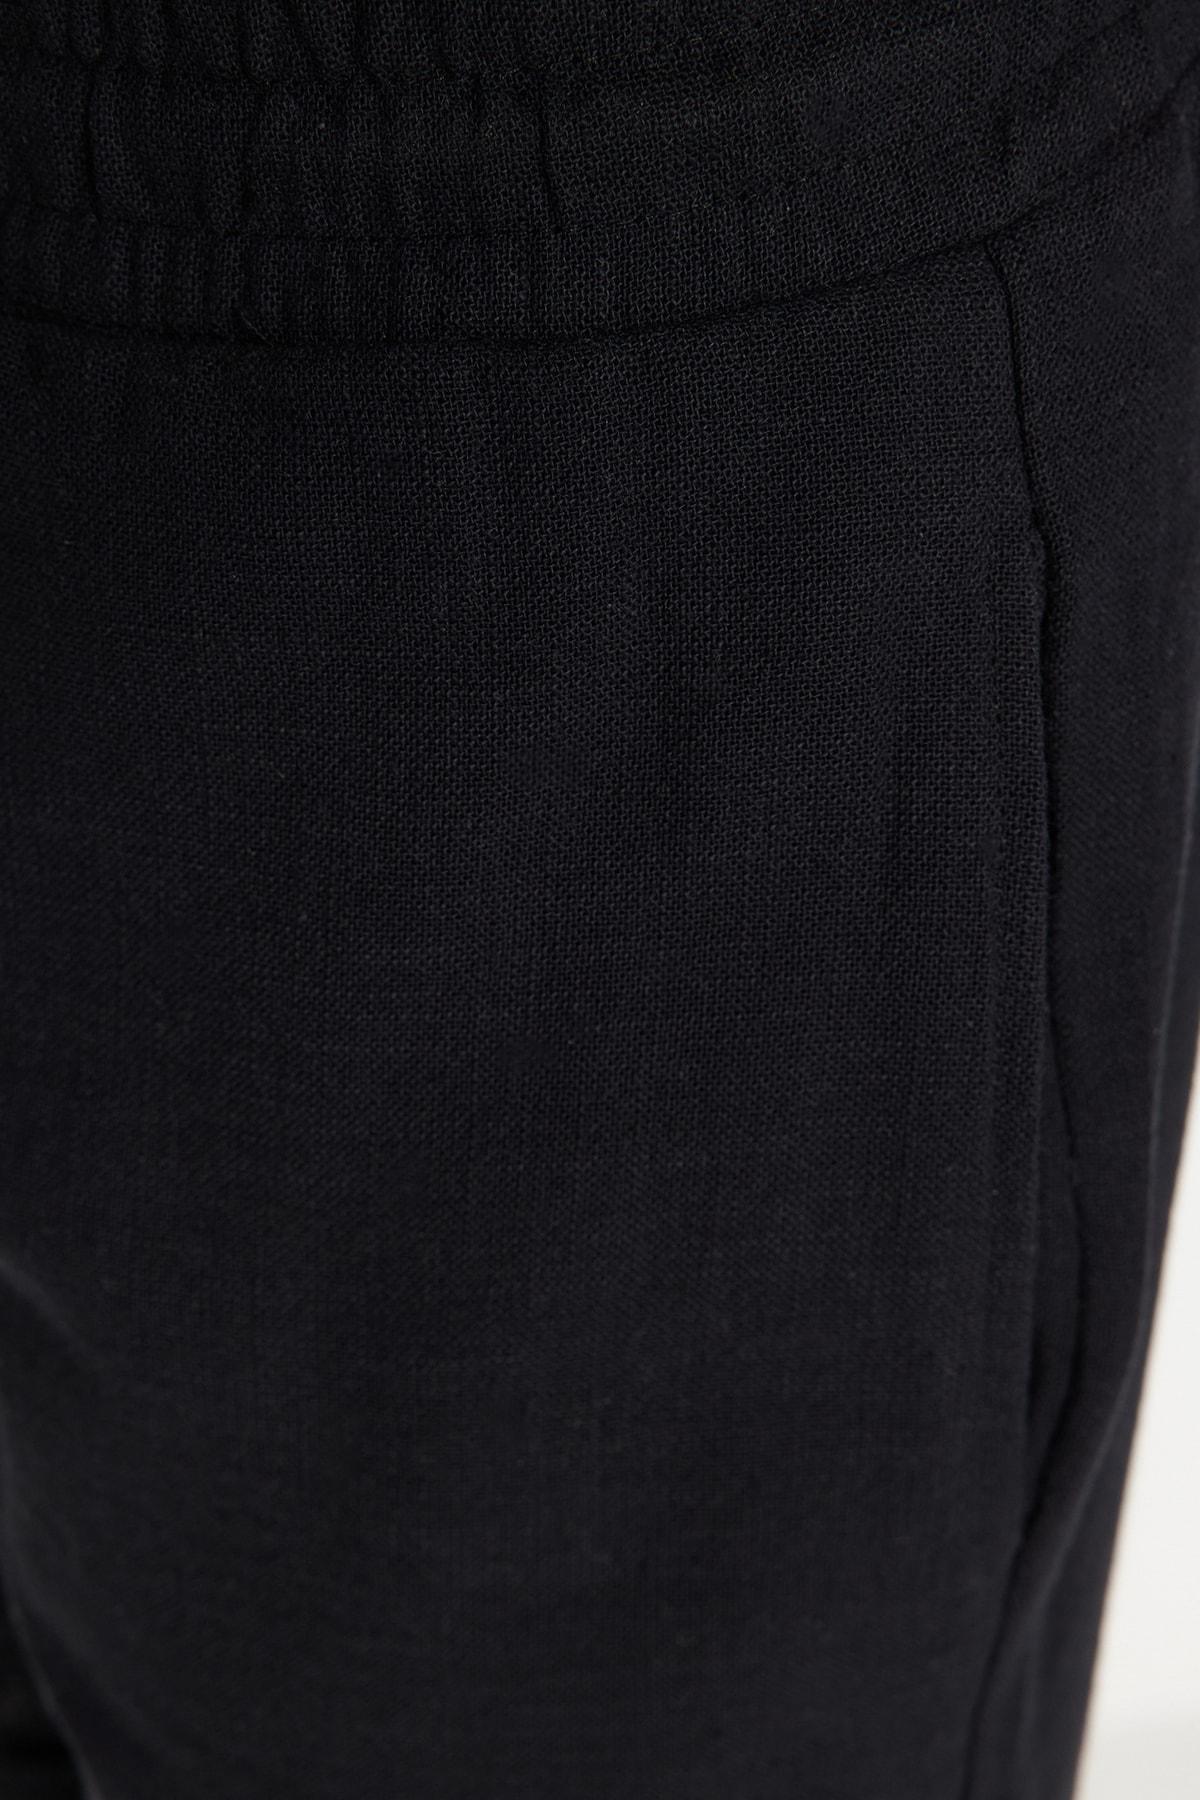 Trendyol - Black Mid Waist Straight Shorts